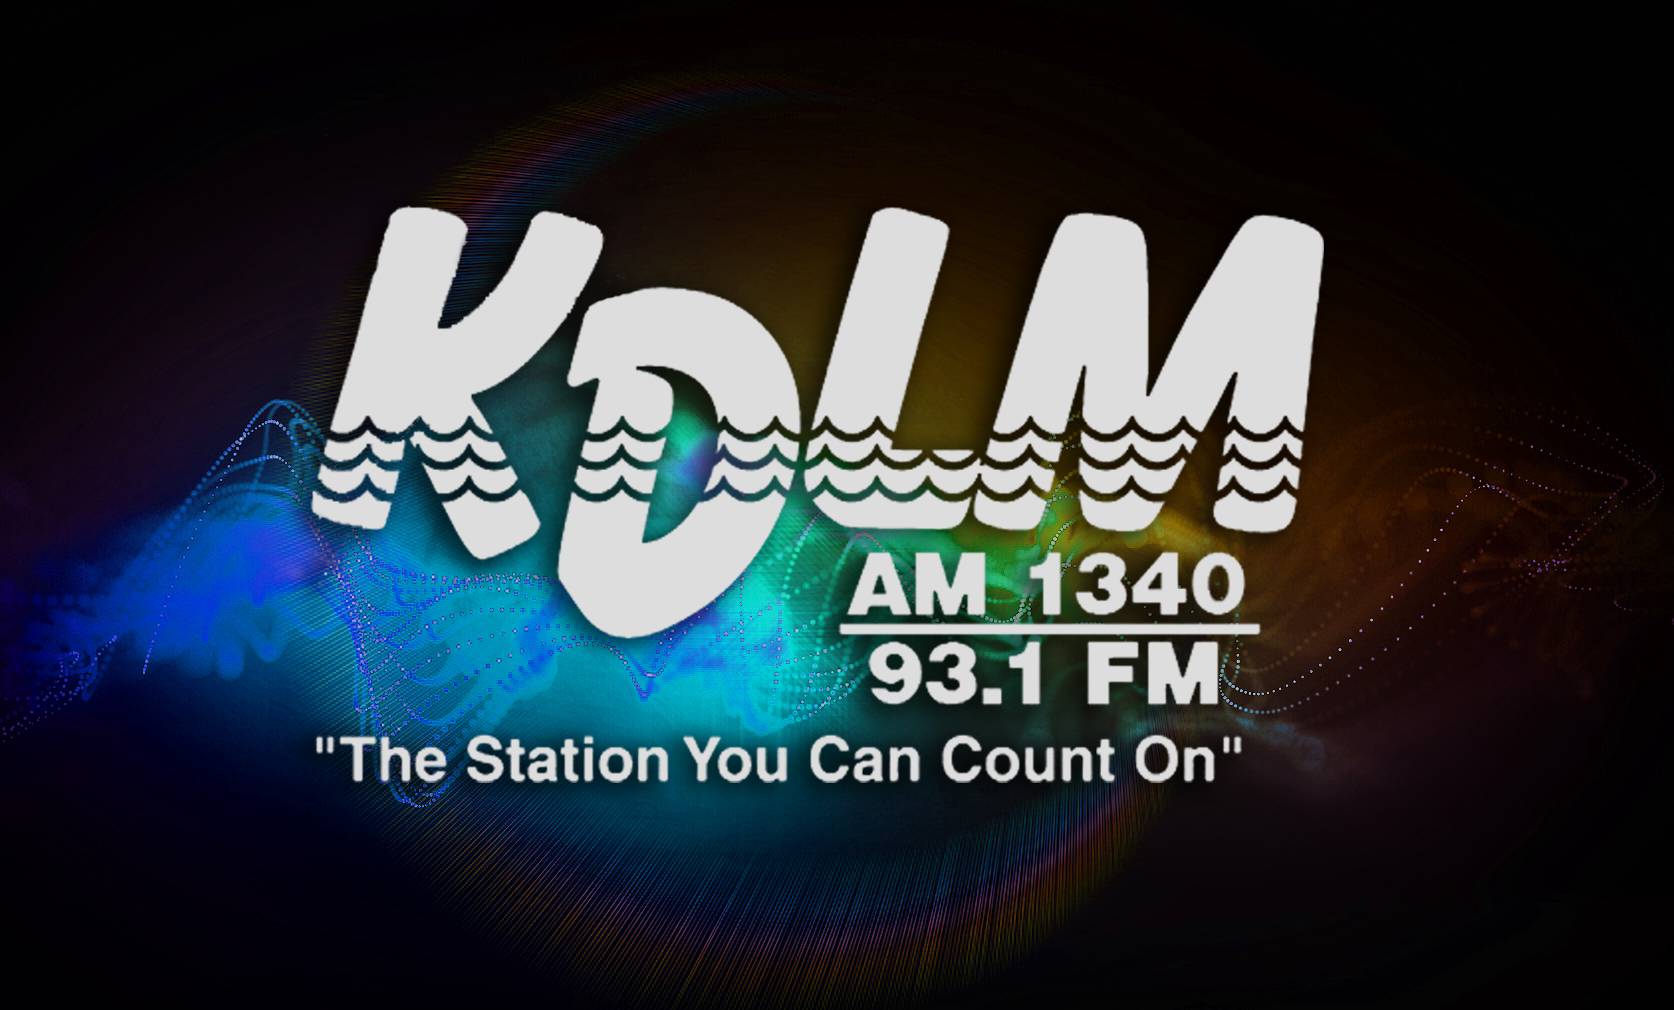 KDLM radio station